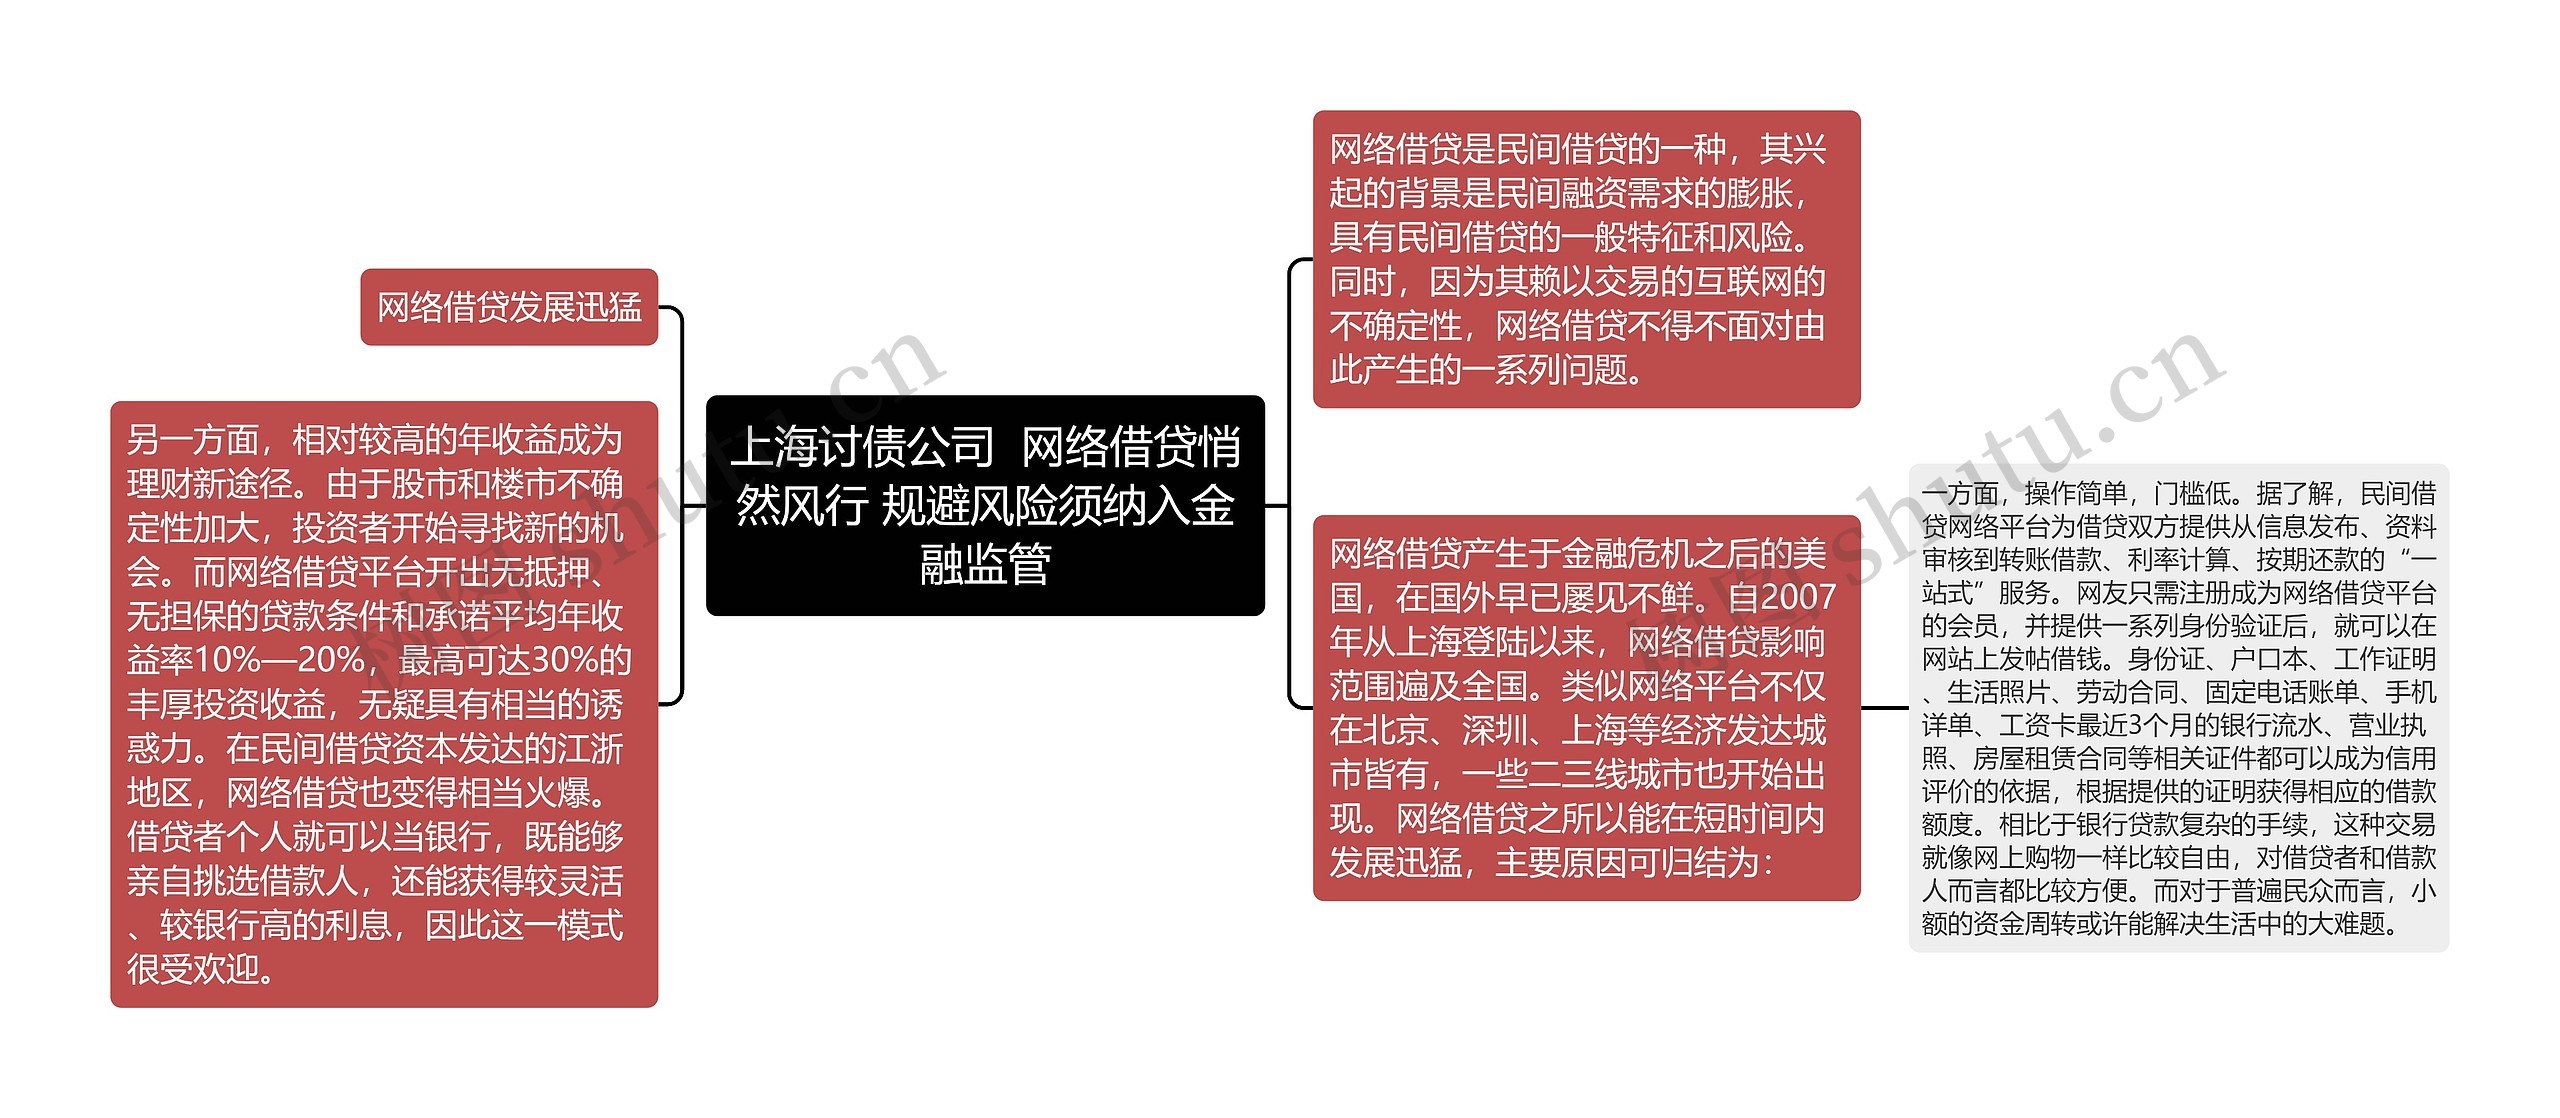 上海讨债公司  网络借贷悄然风行 规避风险须纳入金融监管思维导图